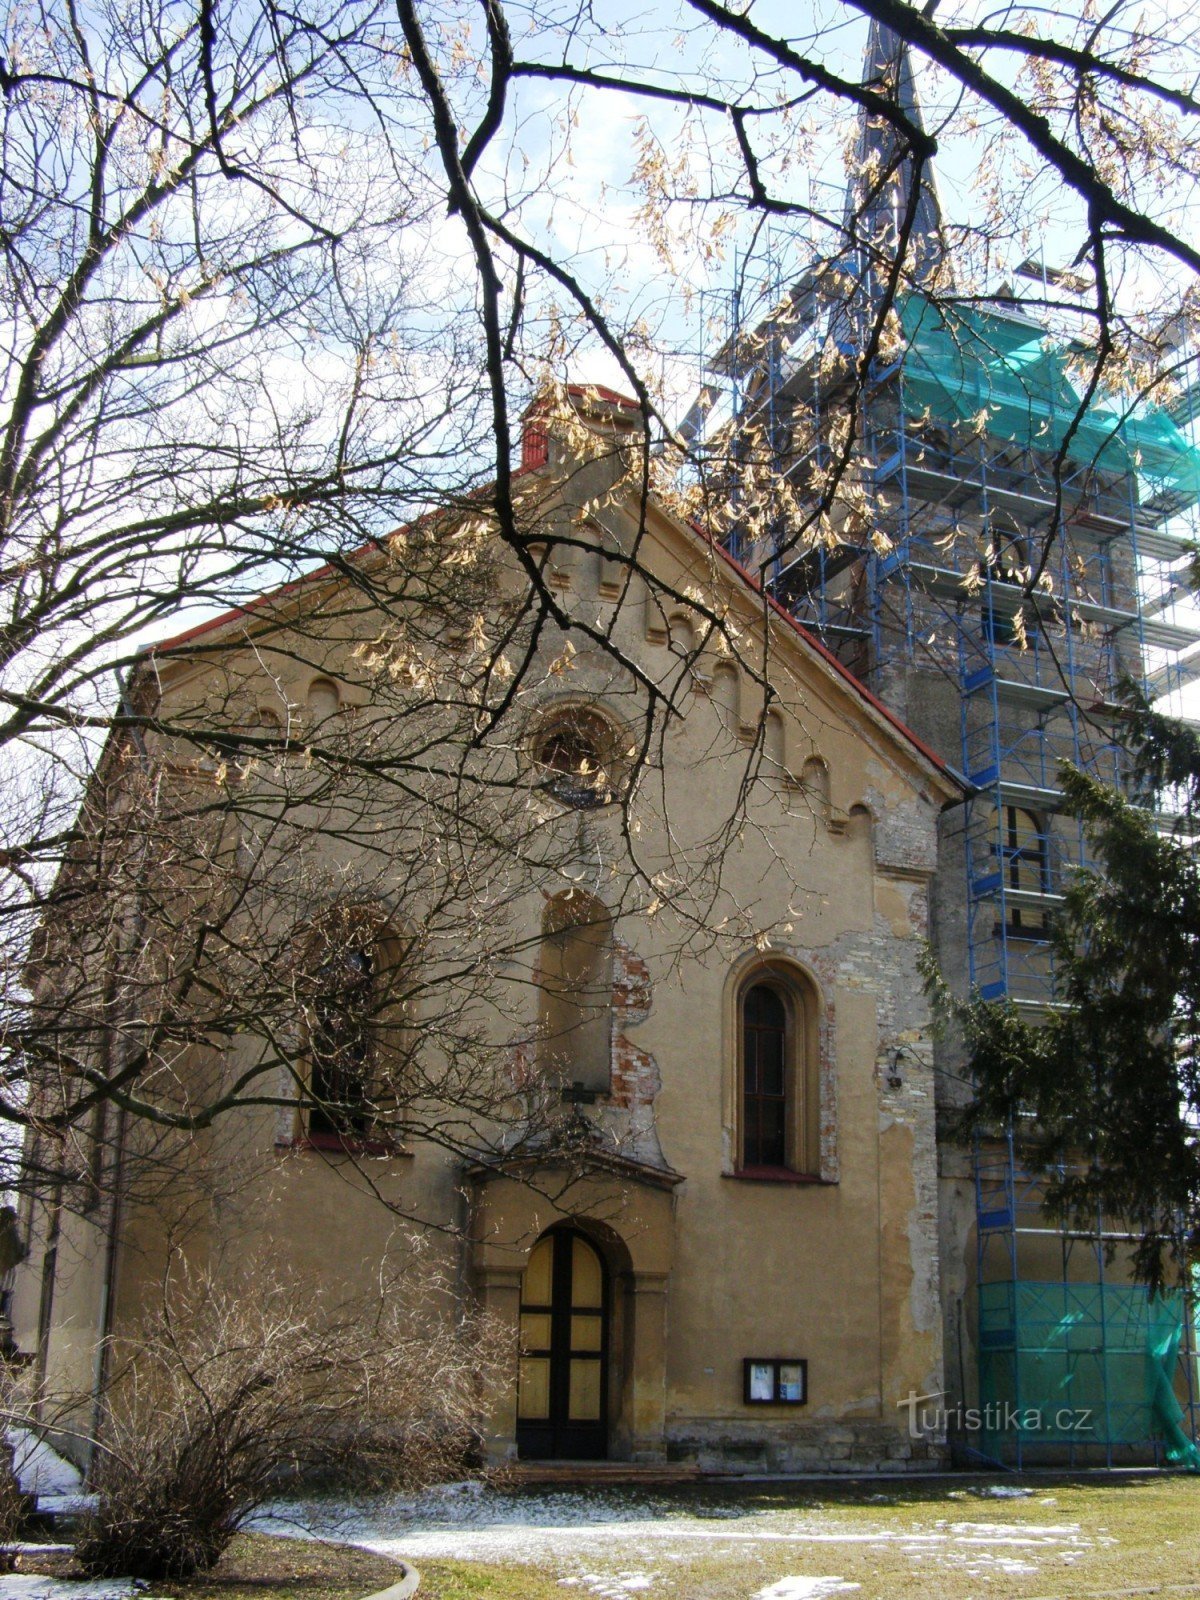 Town of Králové - Church of St. Markets